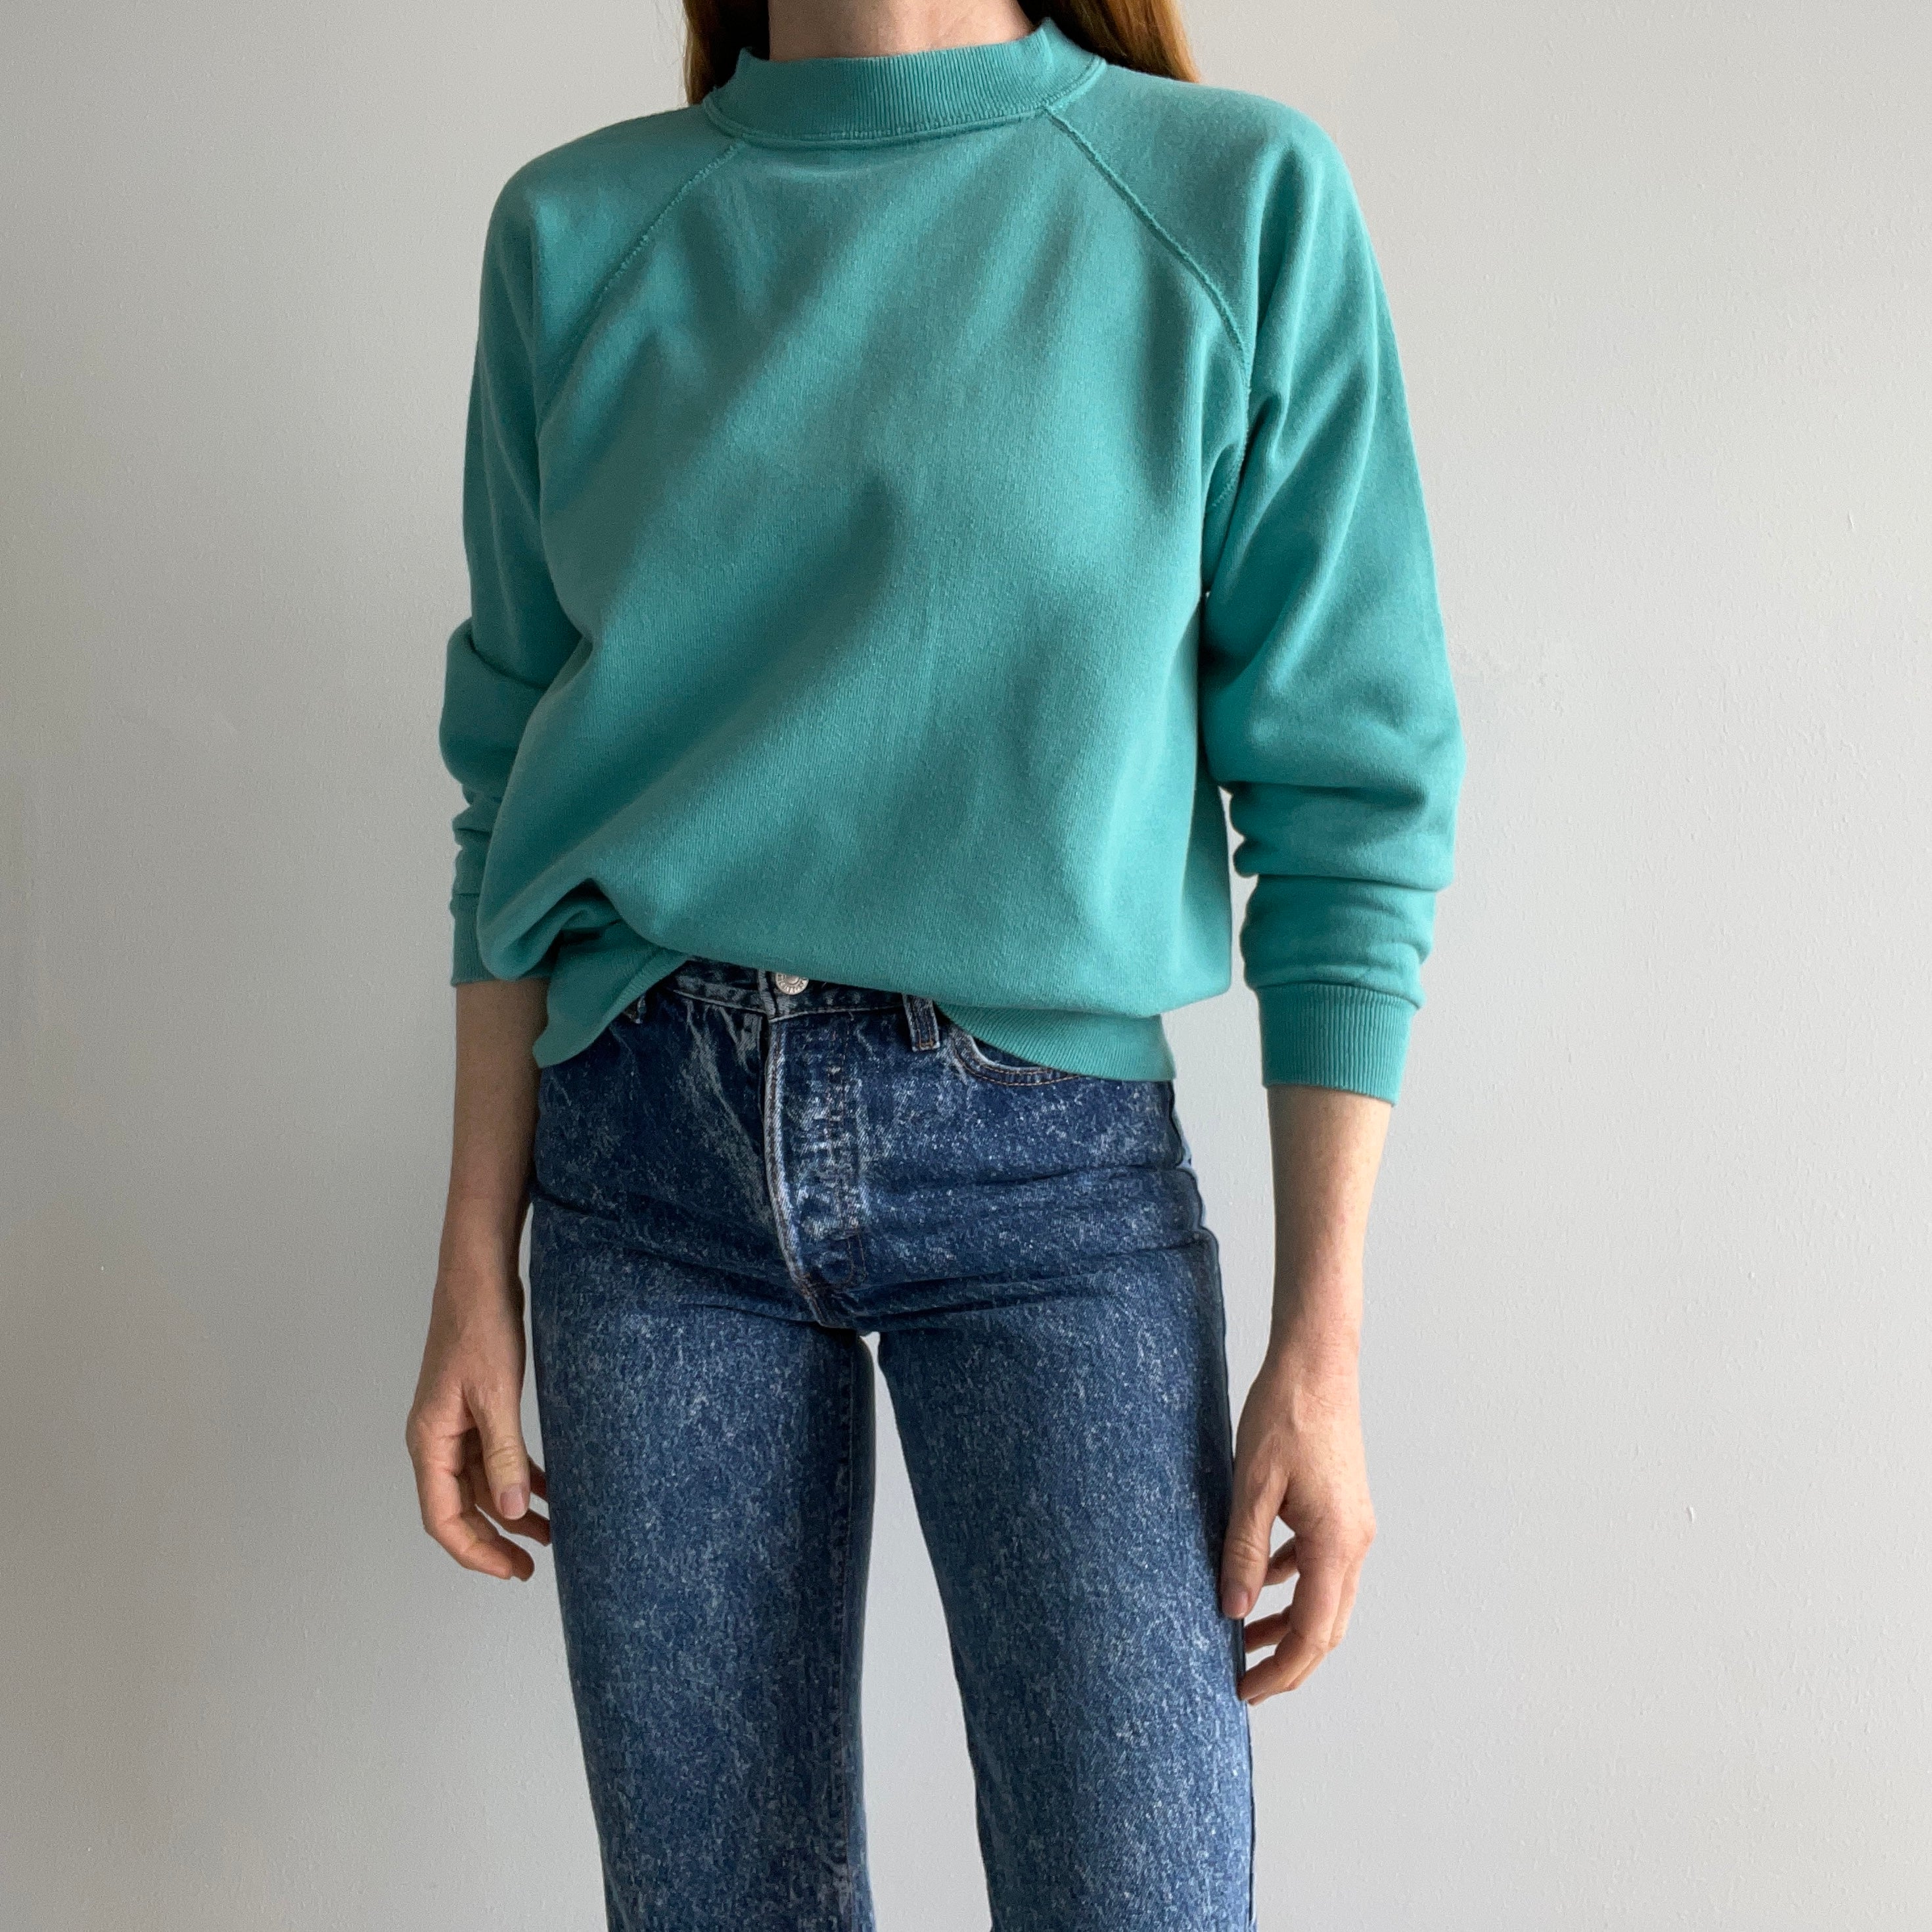 1980s Jade Sea Foam Green/Blue Blank Sweatshirt